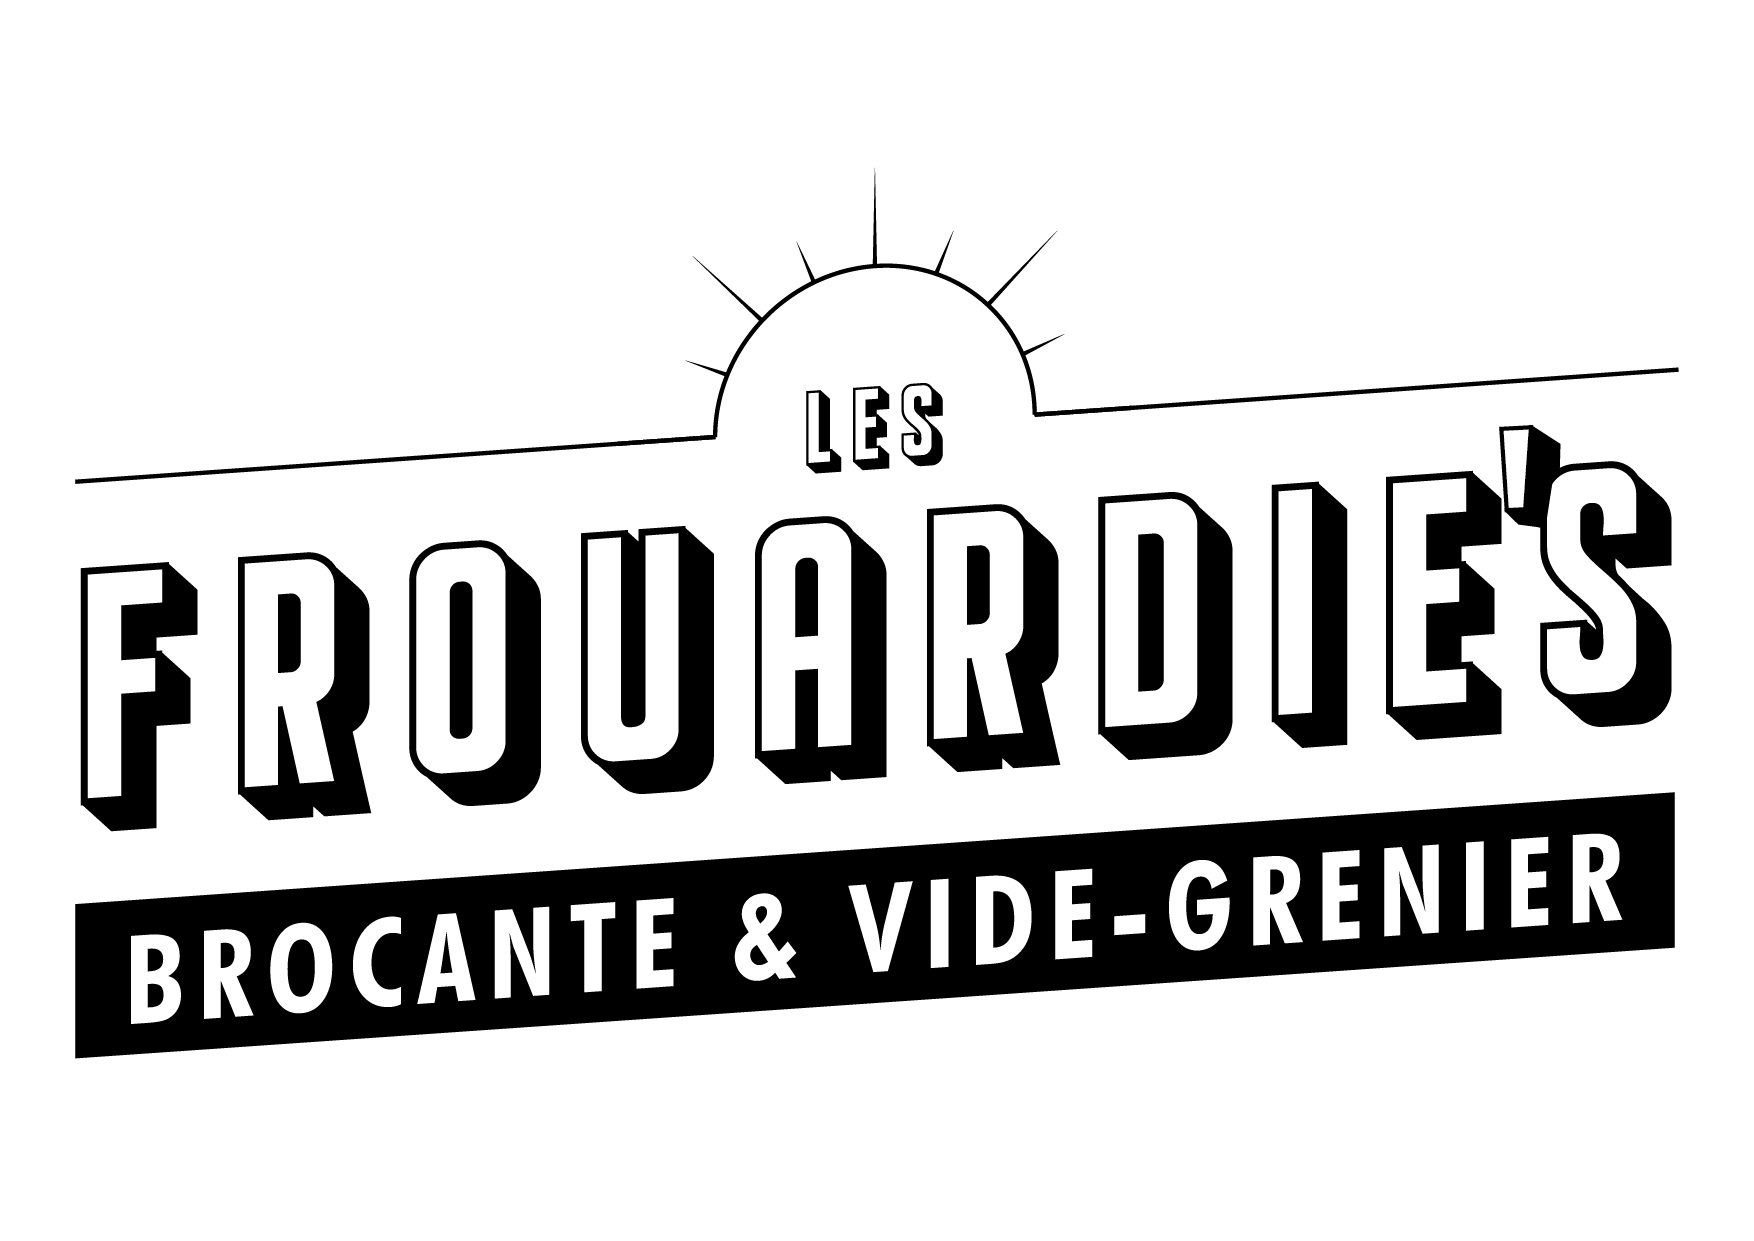 logo frouardies